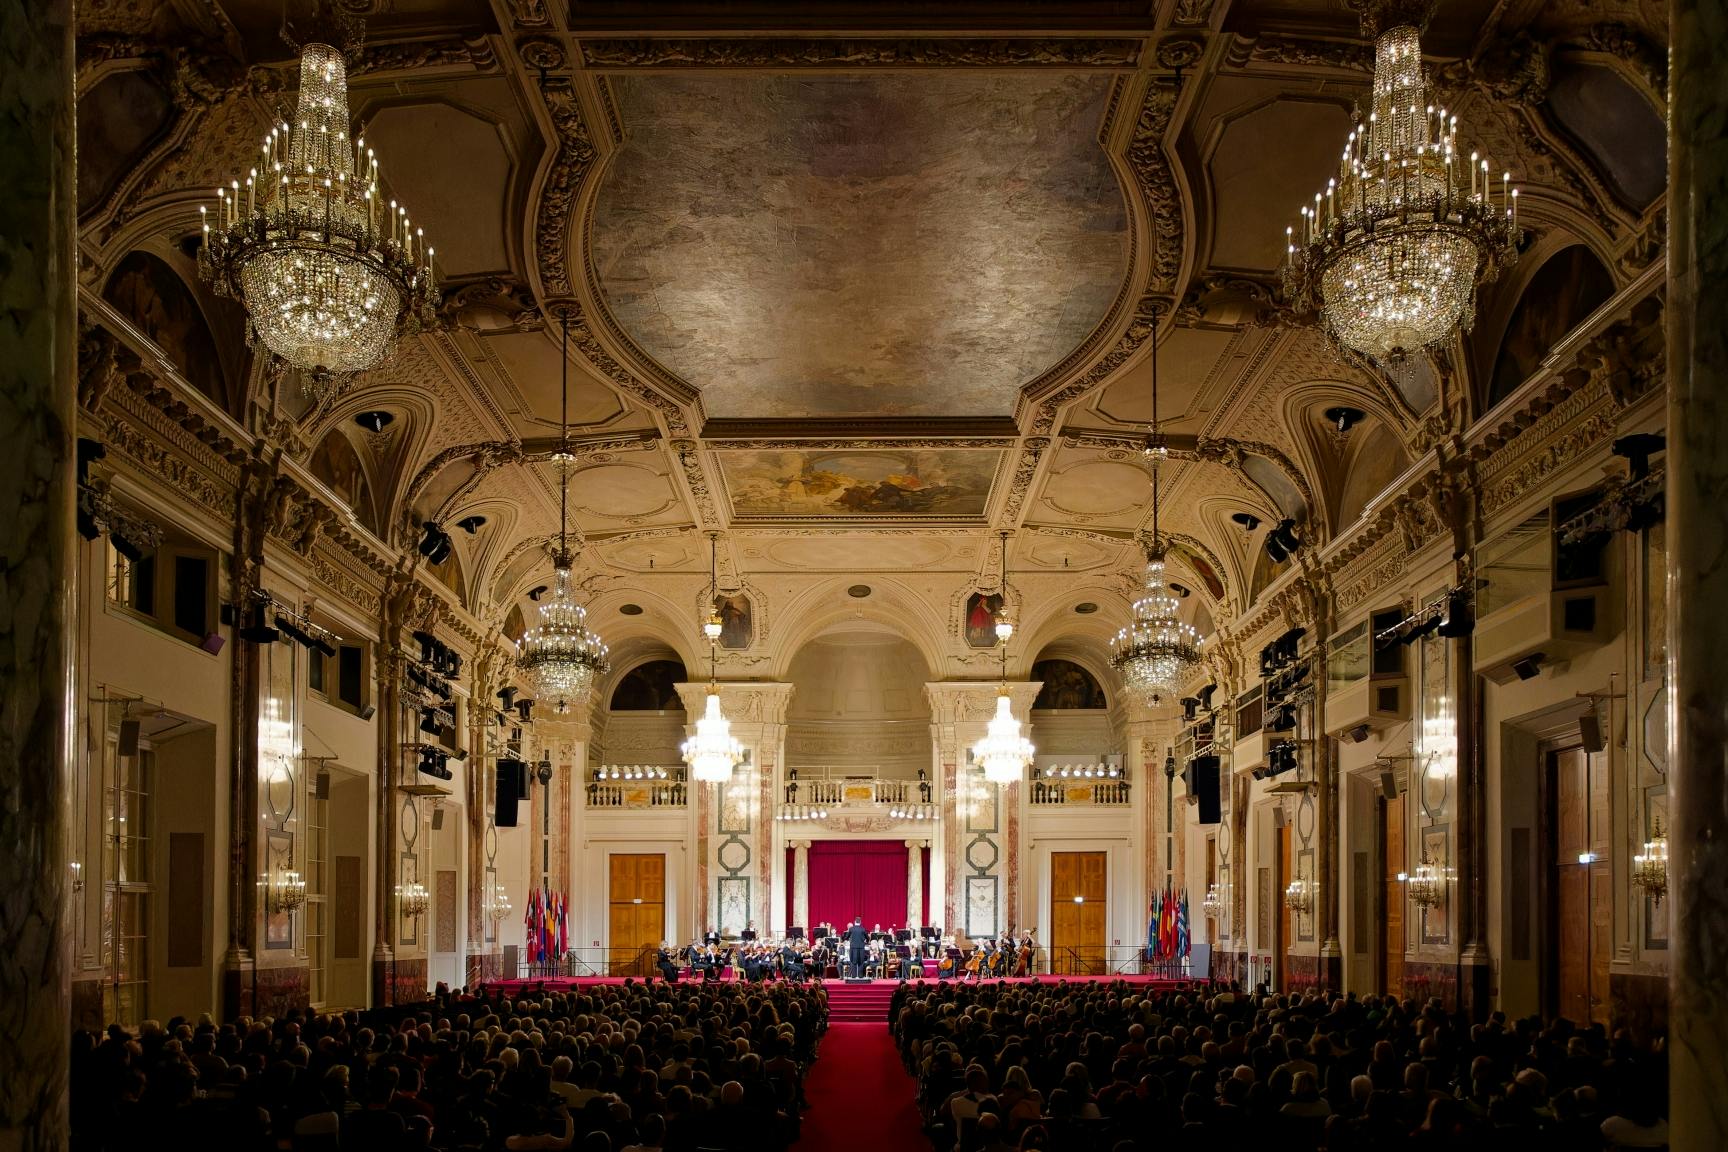 Orchestre de la Hofburg de Vienne : billets de concert de Mozart et Strauss